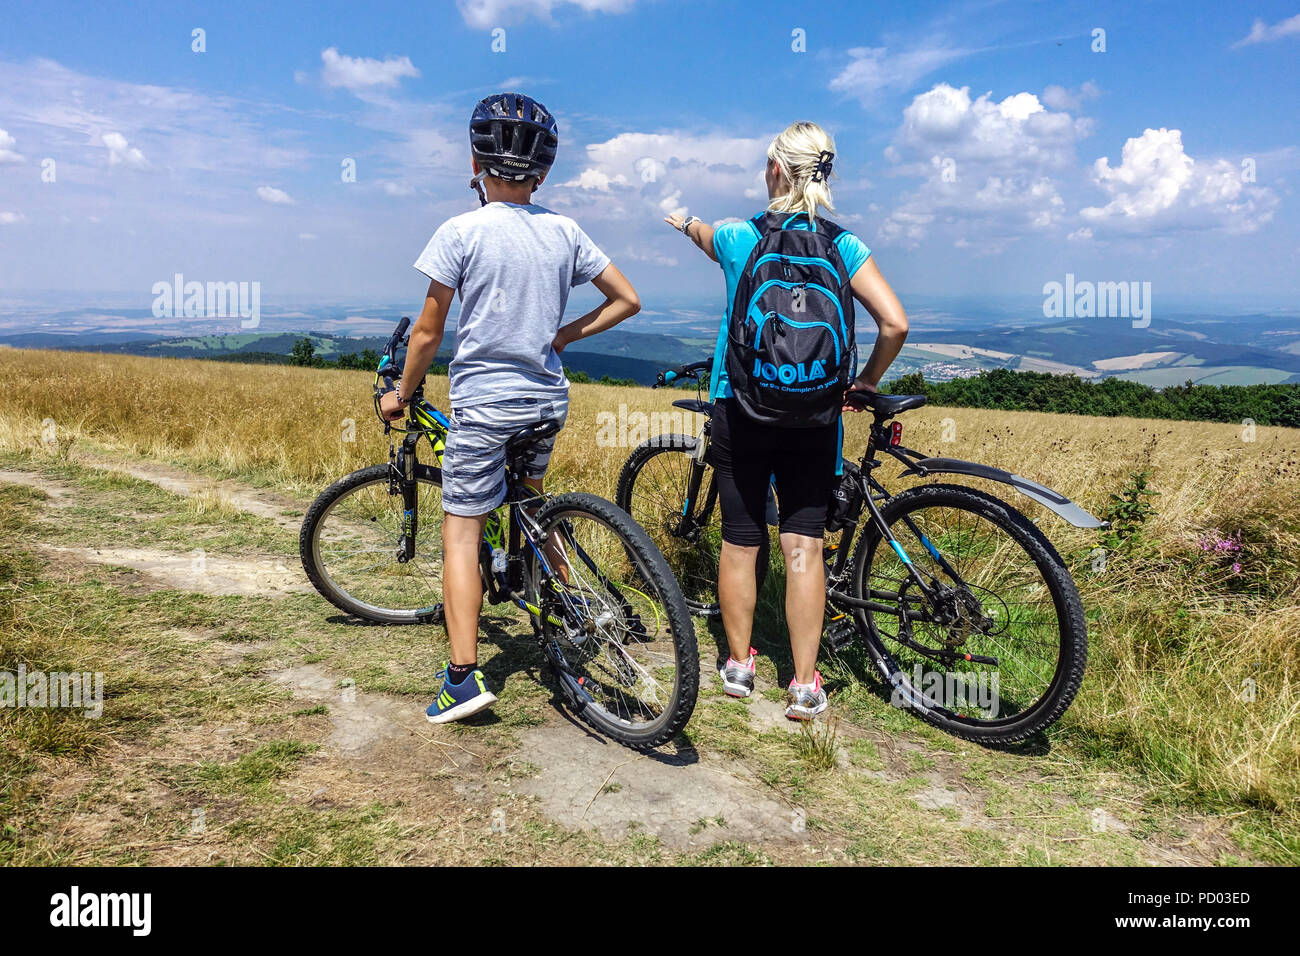 Radfahrer Radfahren auf einem Bergweg, Velka Javorina Berg, tschechisch slowakische Grenze in den Weißen Karpaten Gebirge Tschechische Republik Radfahren Landschaft Stockfoto